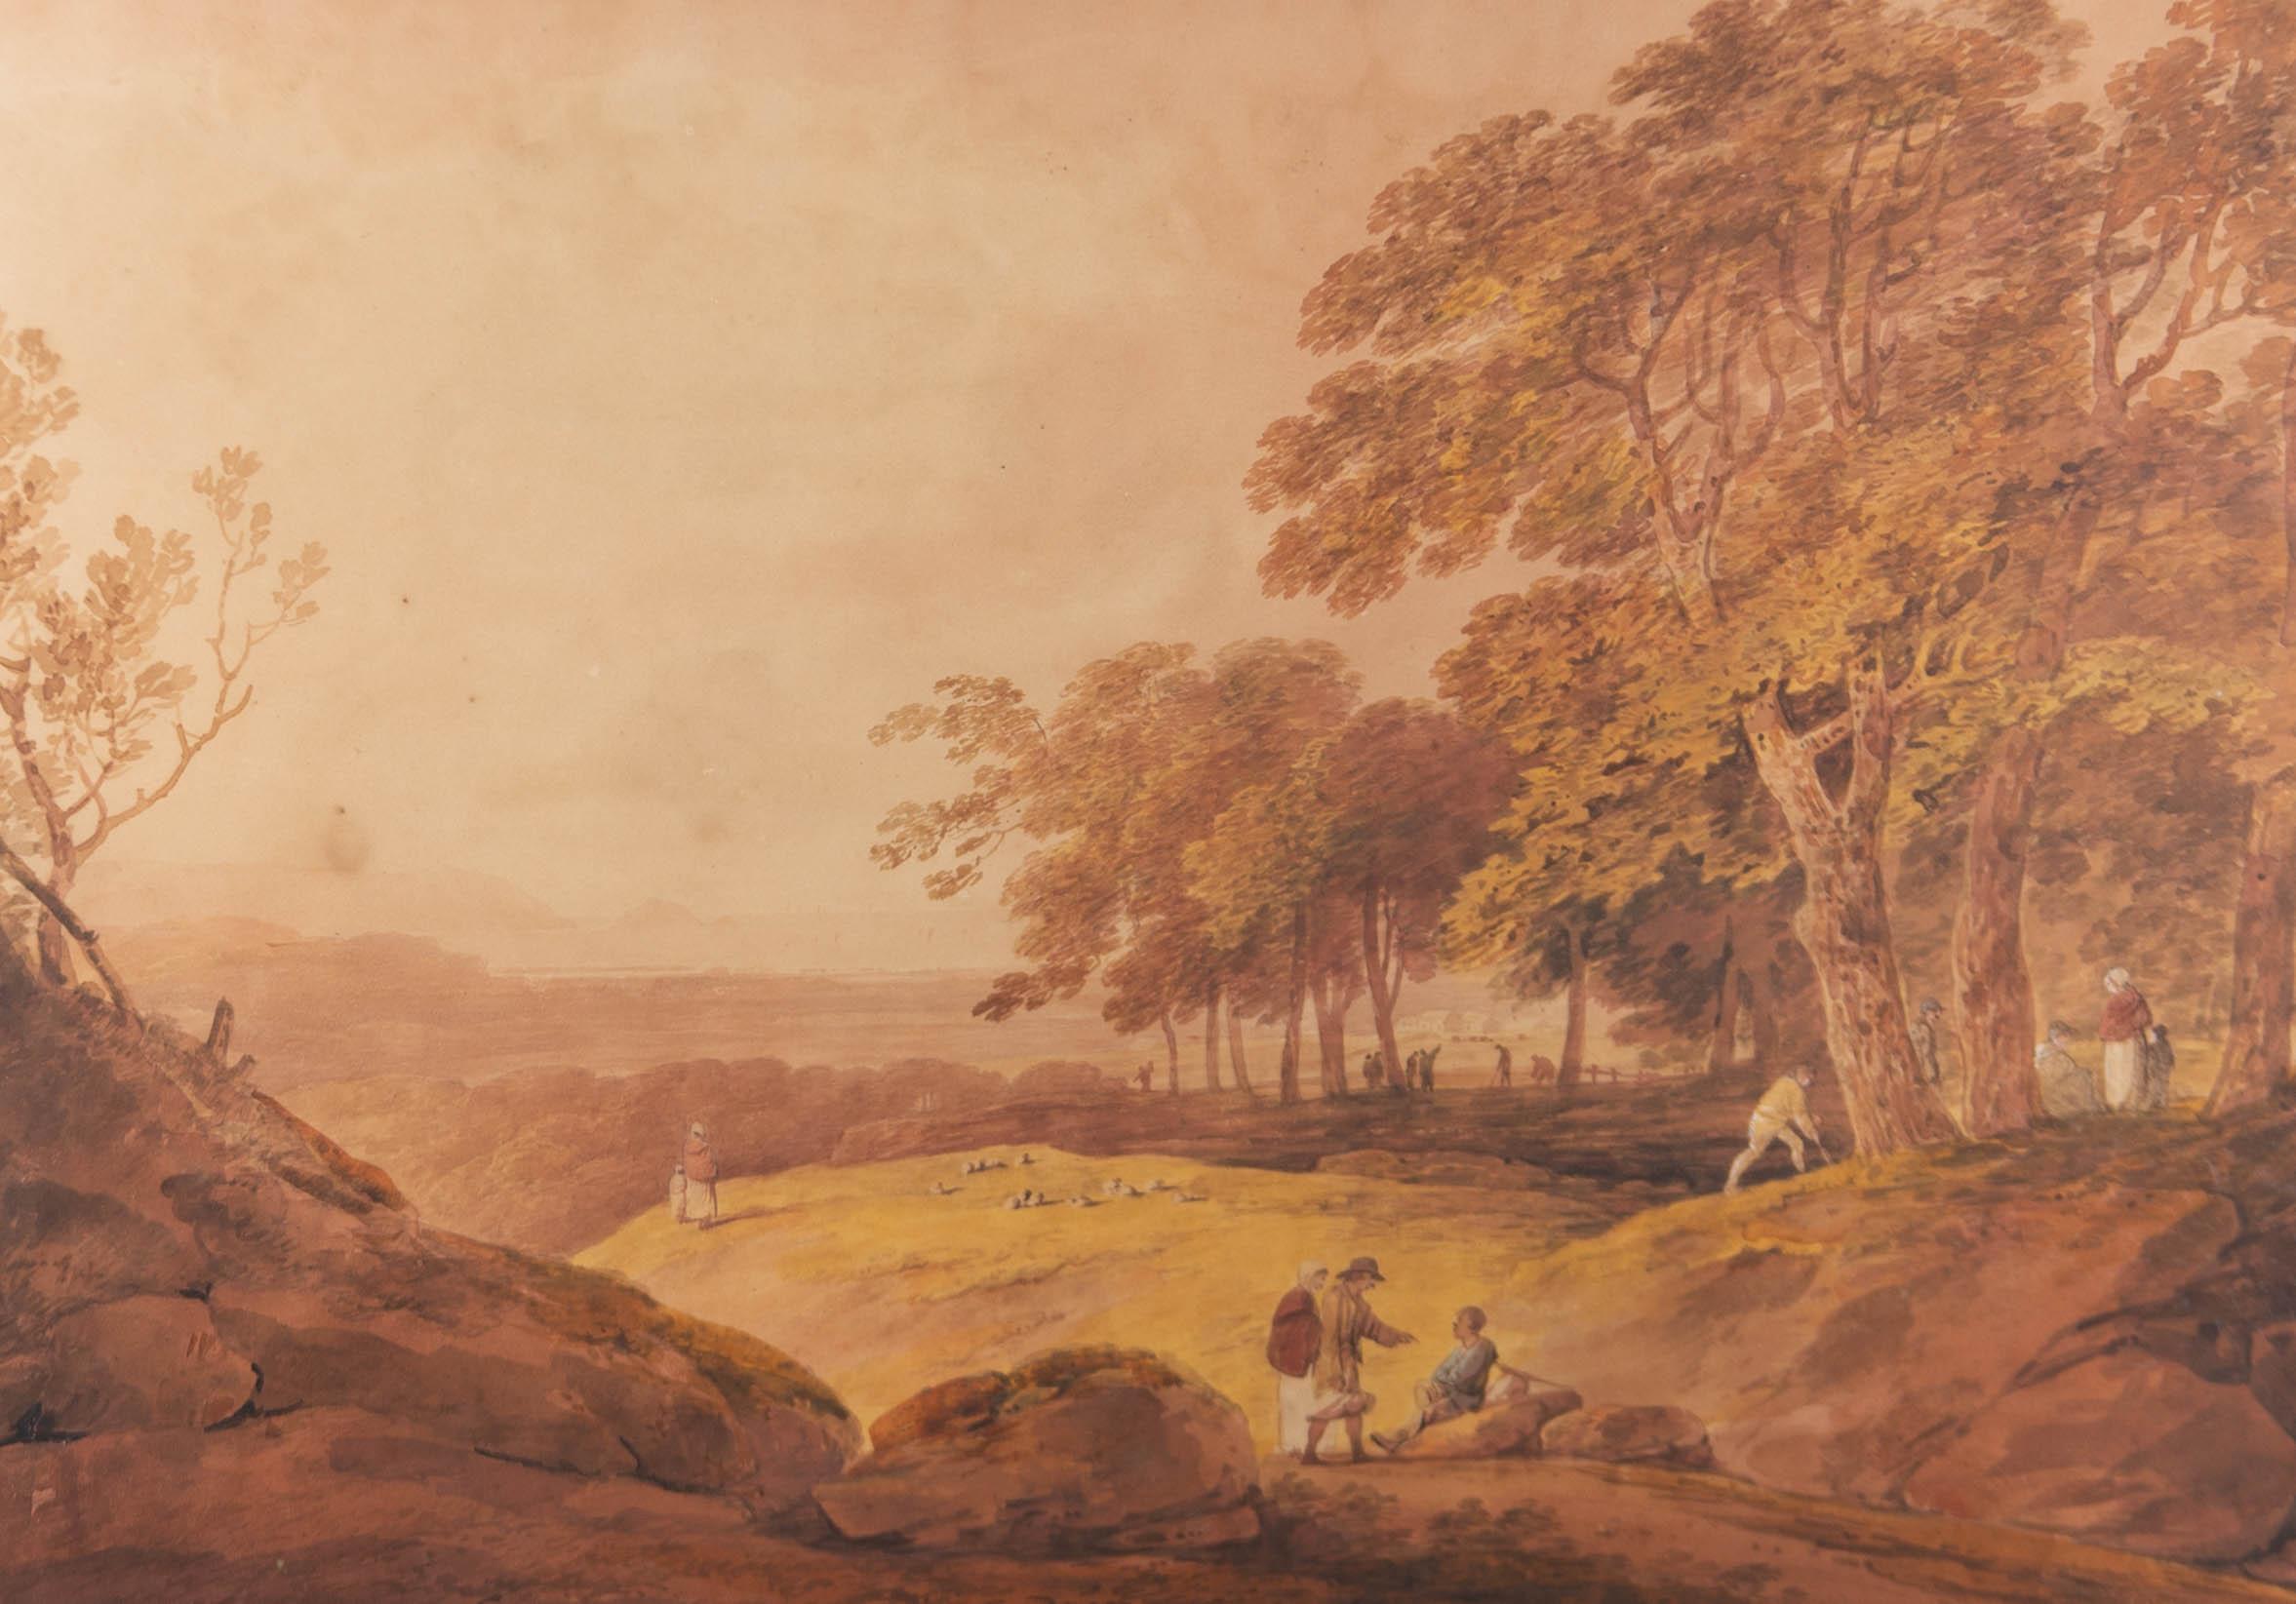 Aquarell-Aquarell des frühen 19. Jahrhunderts - Panoramiklandschaft mit Figuren (Braun), Landscape Art, von Unknown